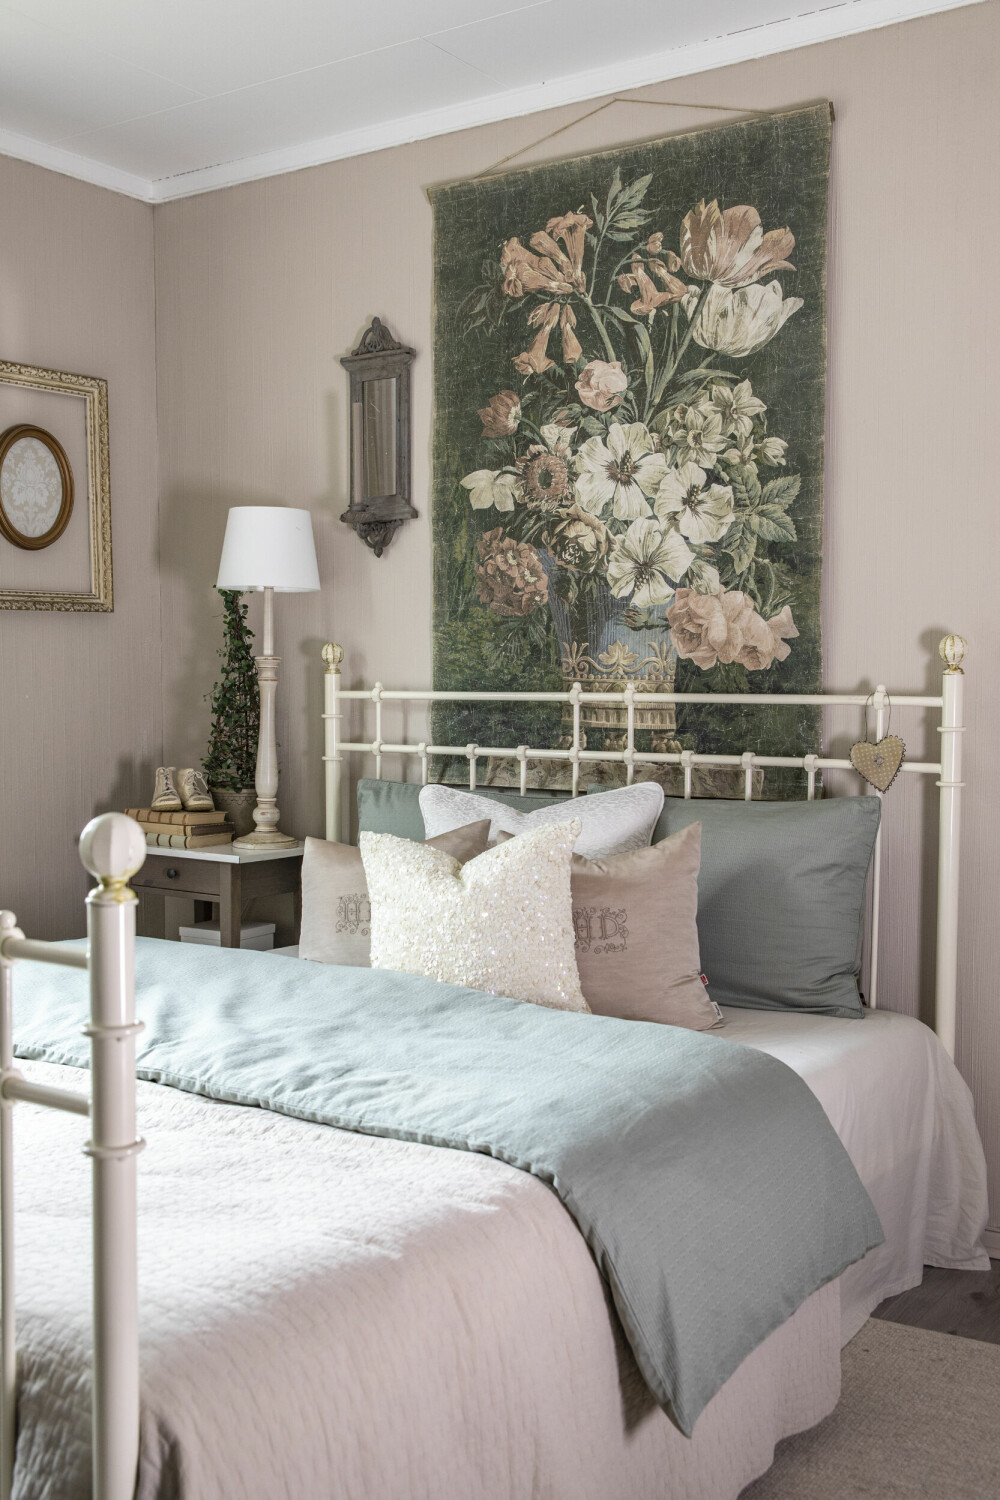 HOTELLFØLELSE: På dette romslige gjesterommet er det hotellfølelse og luksus. Fargene går i duse rosatoner og bak senga har hun hengt et stort blomstermaleri.